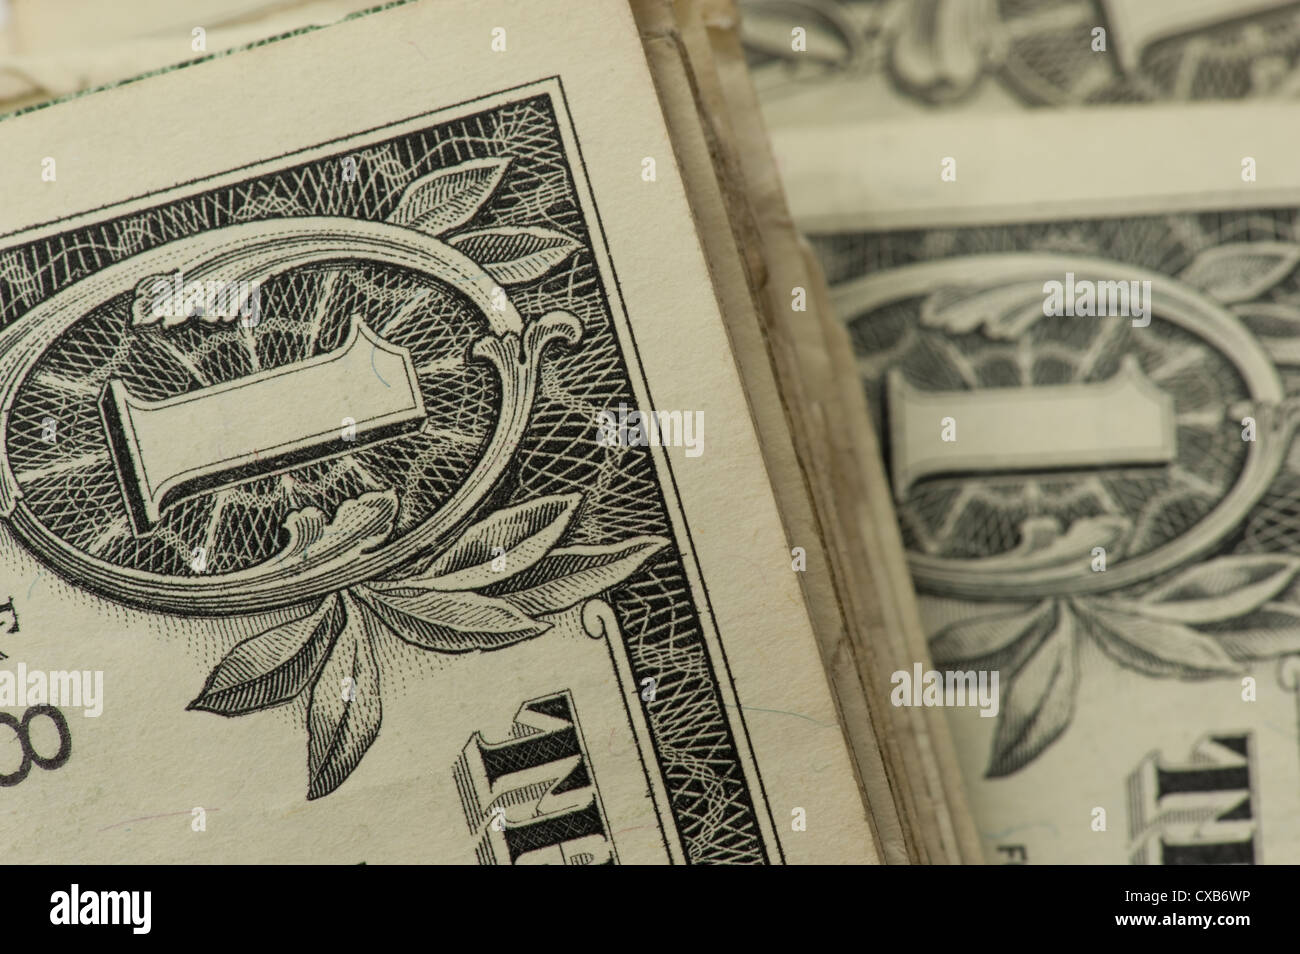 Vista conceptual de varios billetes de un dólar US apilados juntos Foto de stock